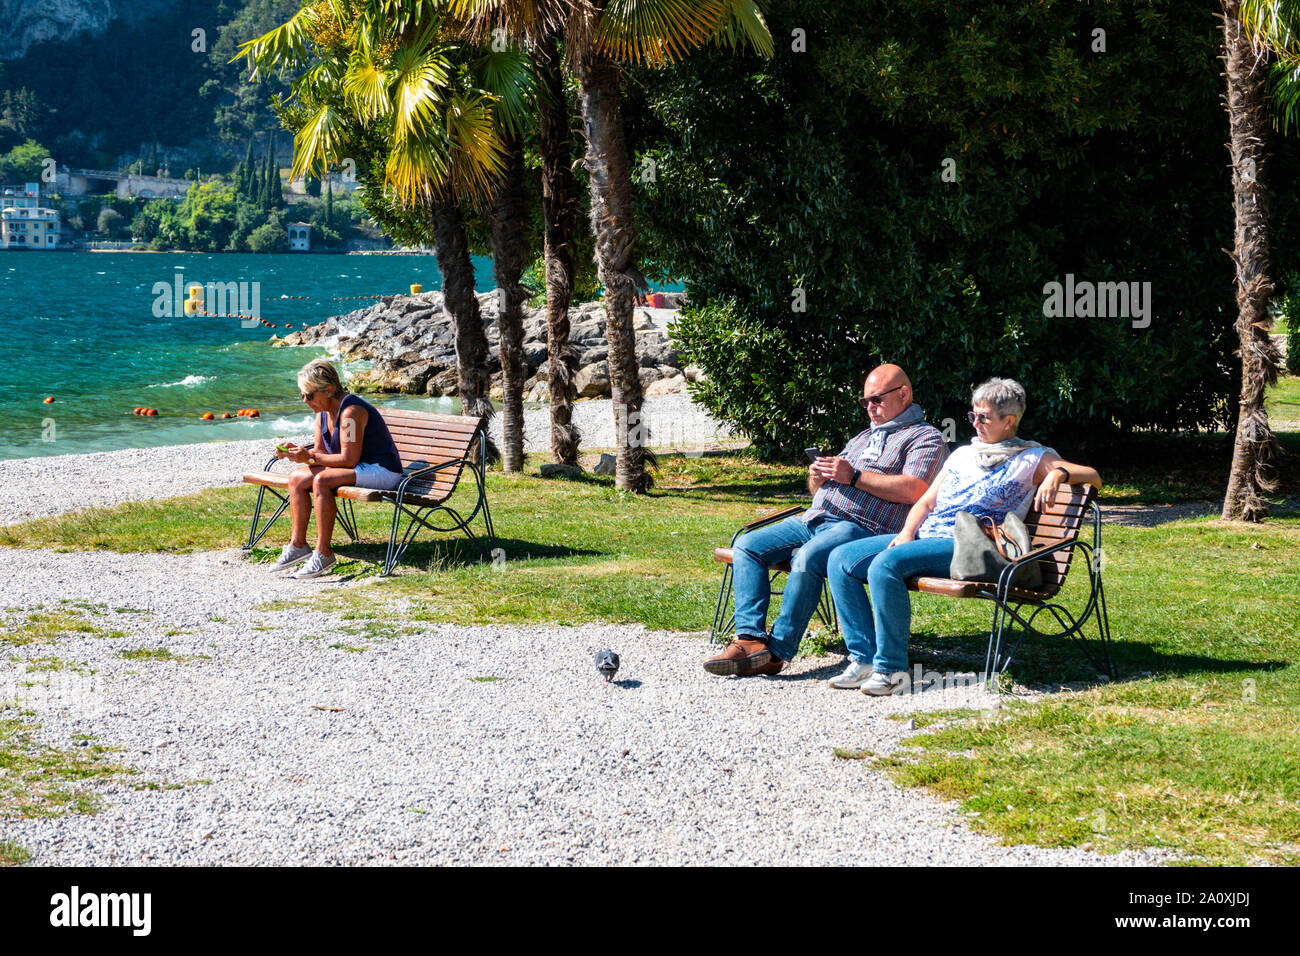 Los turistas en teléfonos móviles, por el lago, Riva del Garda Trentino, Alto Adige, en el norte de Italia Foto de stock